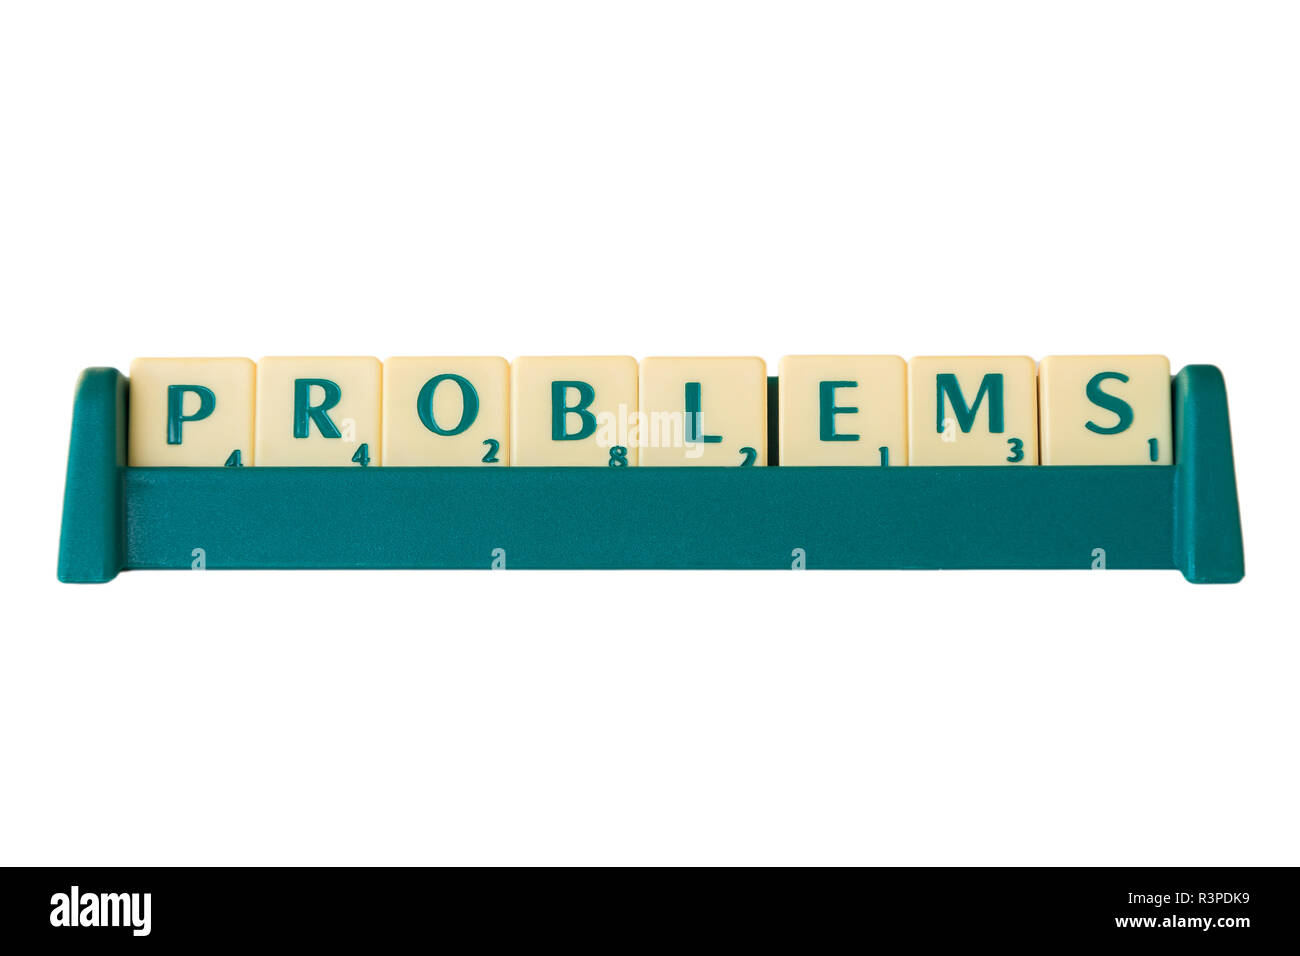 Scrabble-Spiel Buchstabensteine mit Score Wert auf einem Ständer bilden das Wort 'Probleme'. Auf weissem Hintergrund. Stockfoto